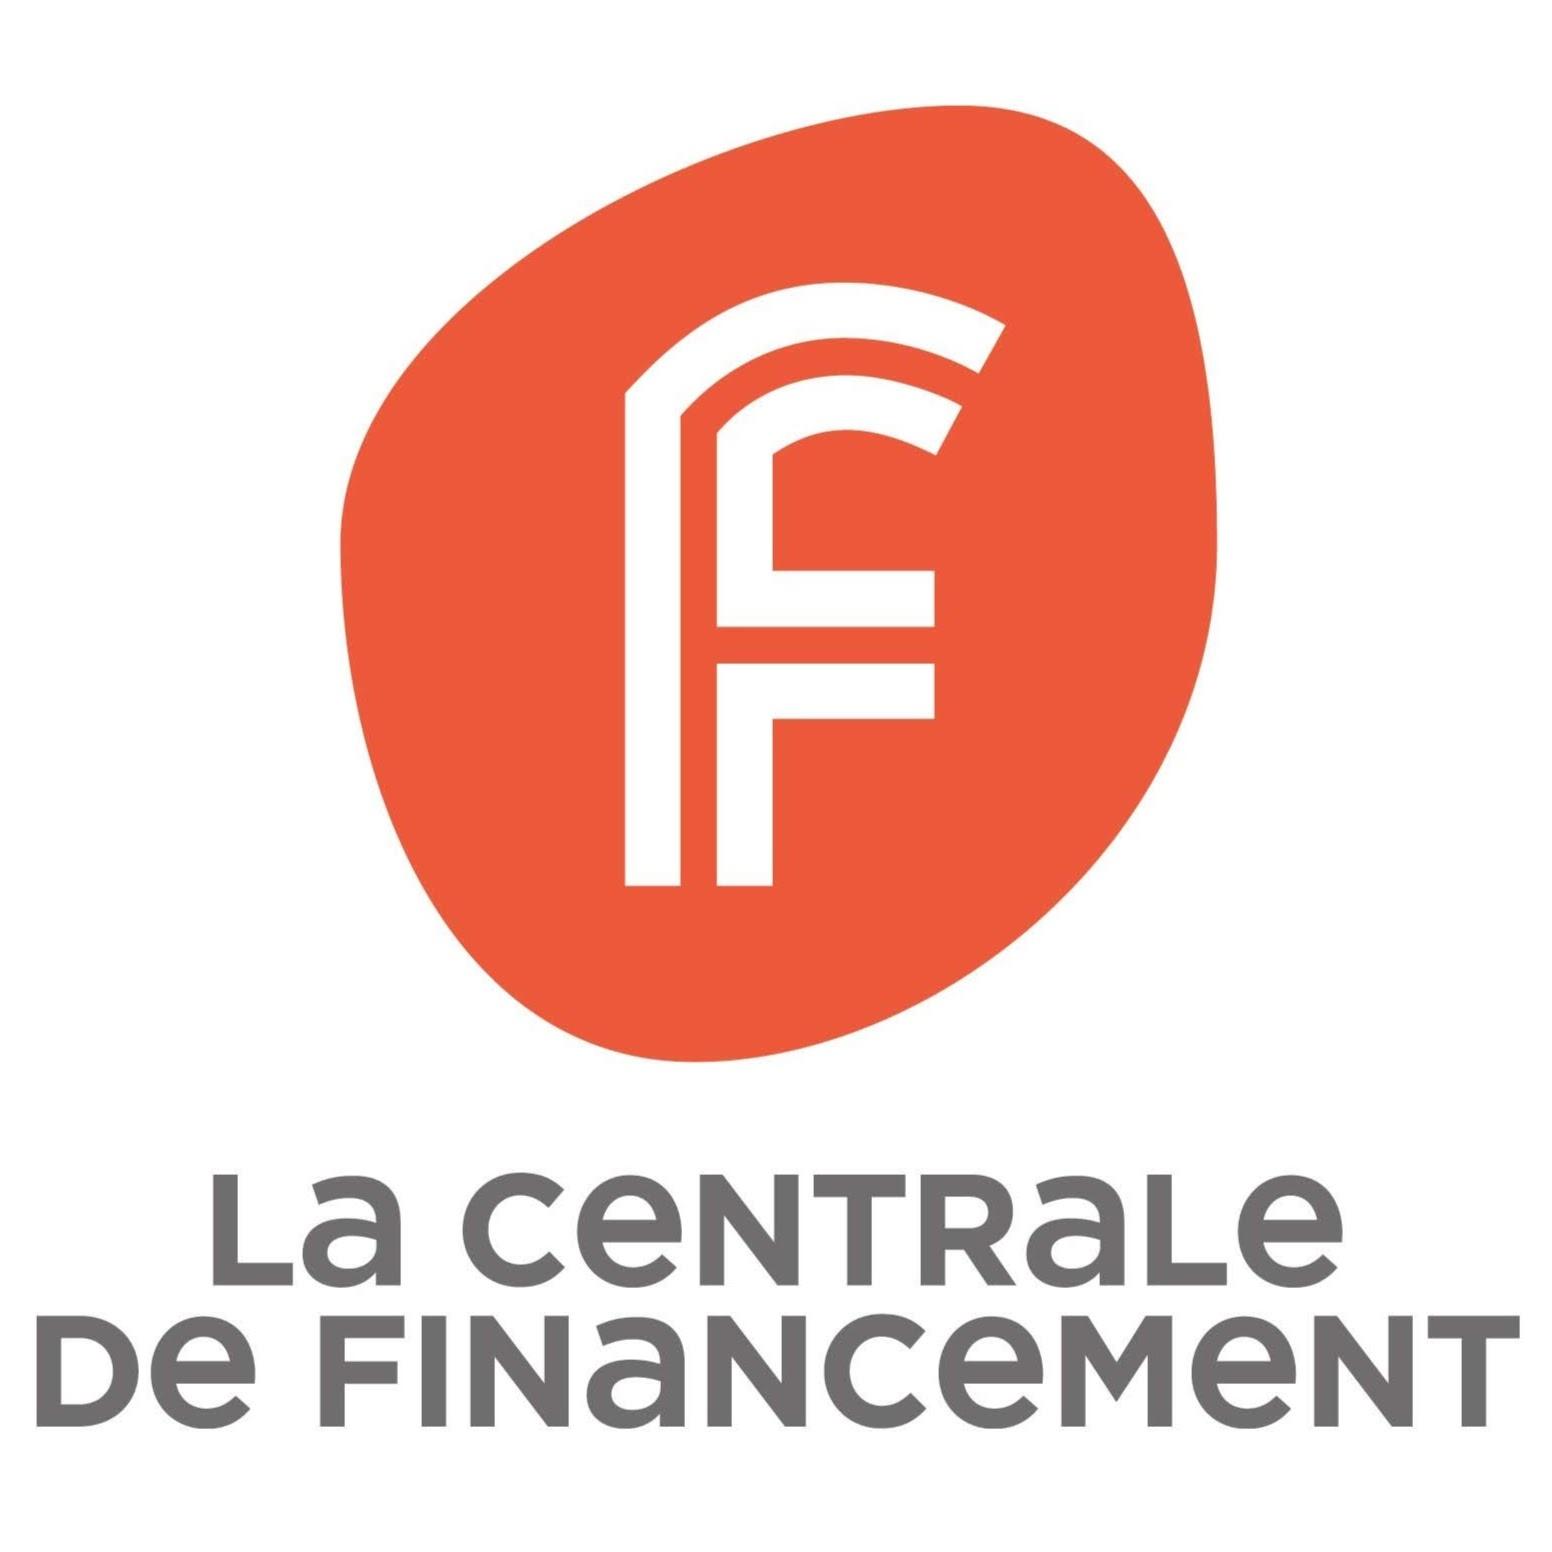 La Centrale De Financement Montreuil